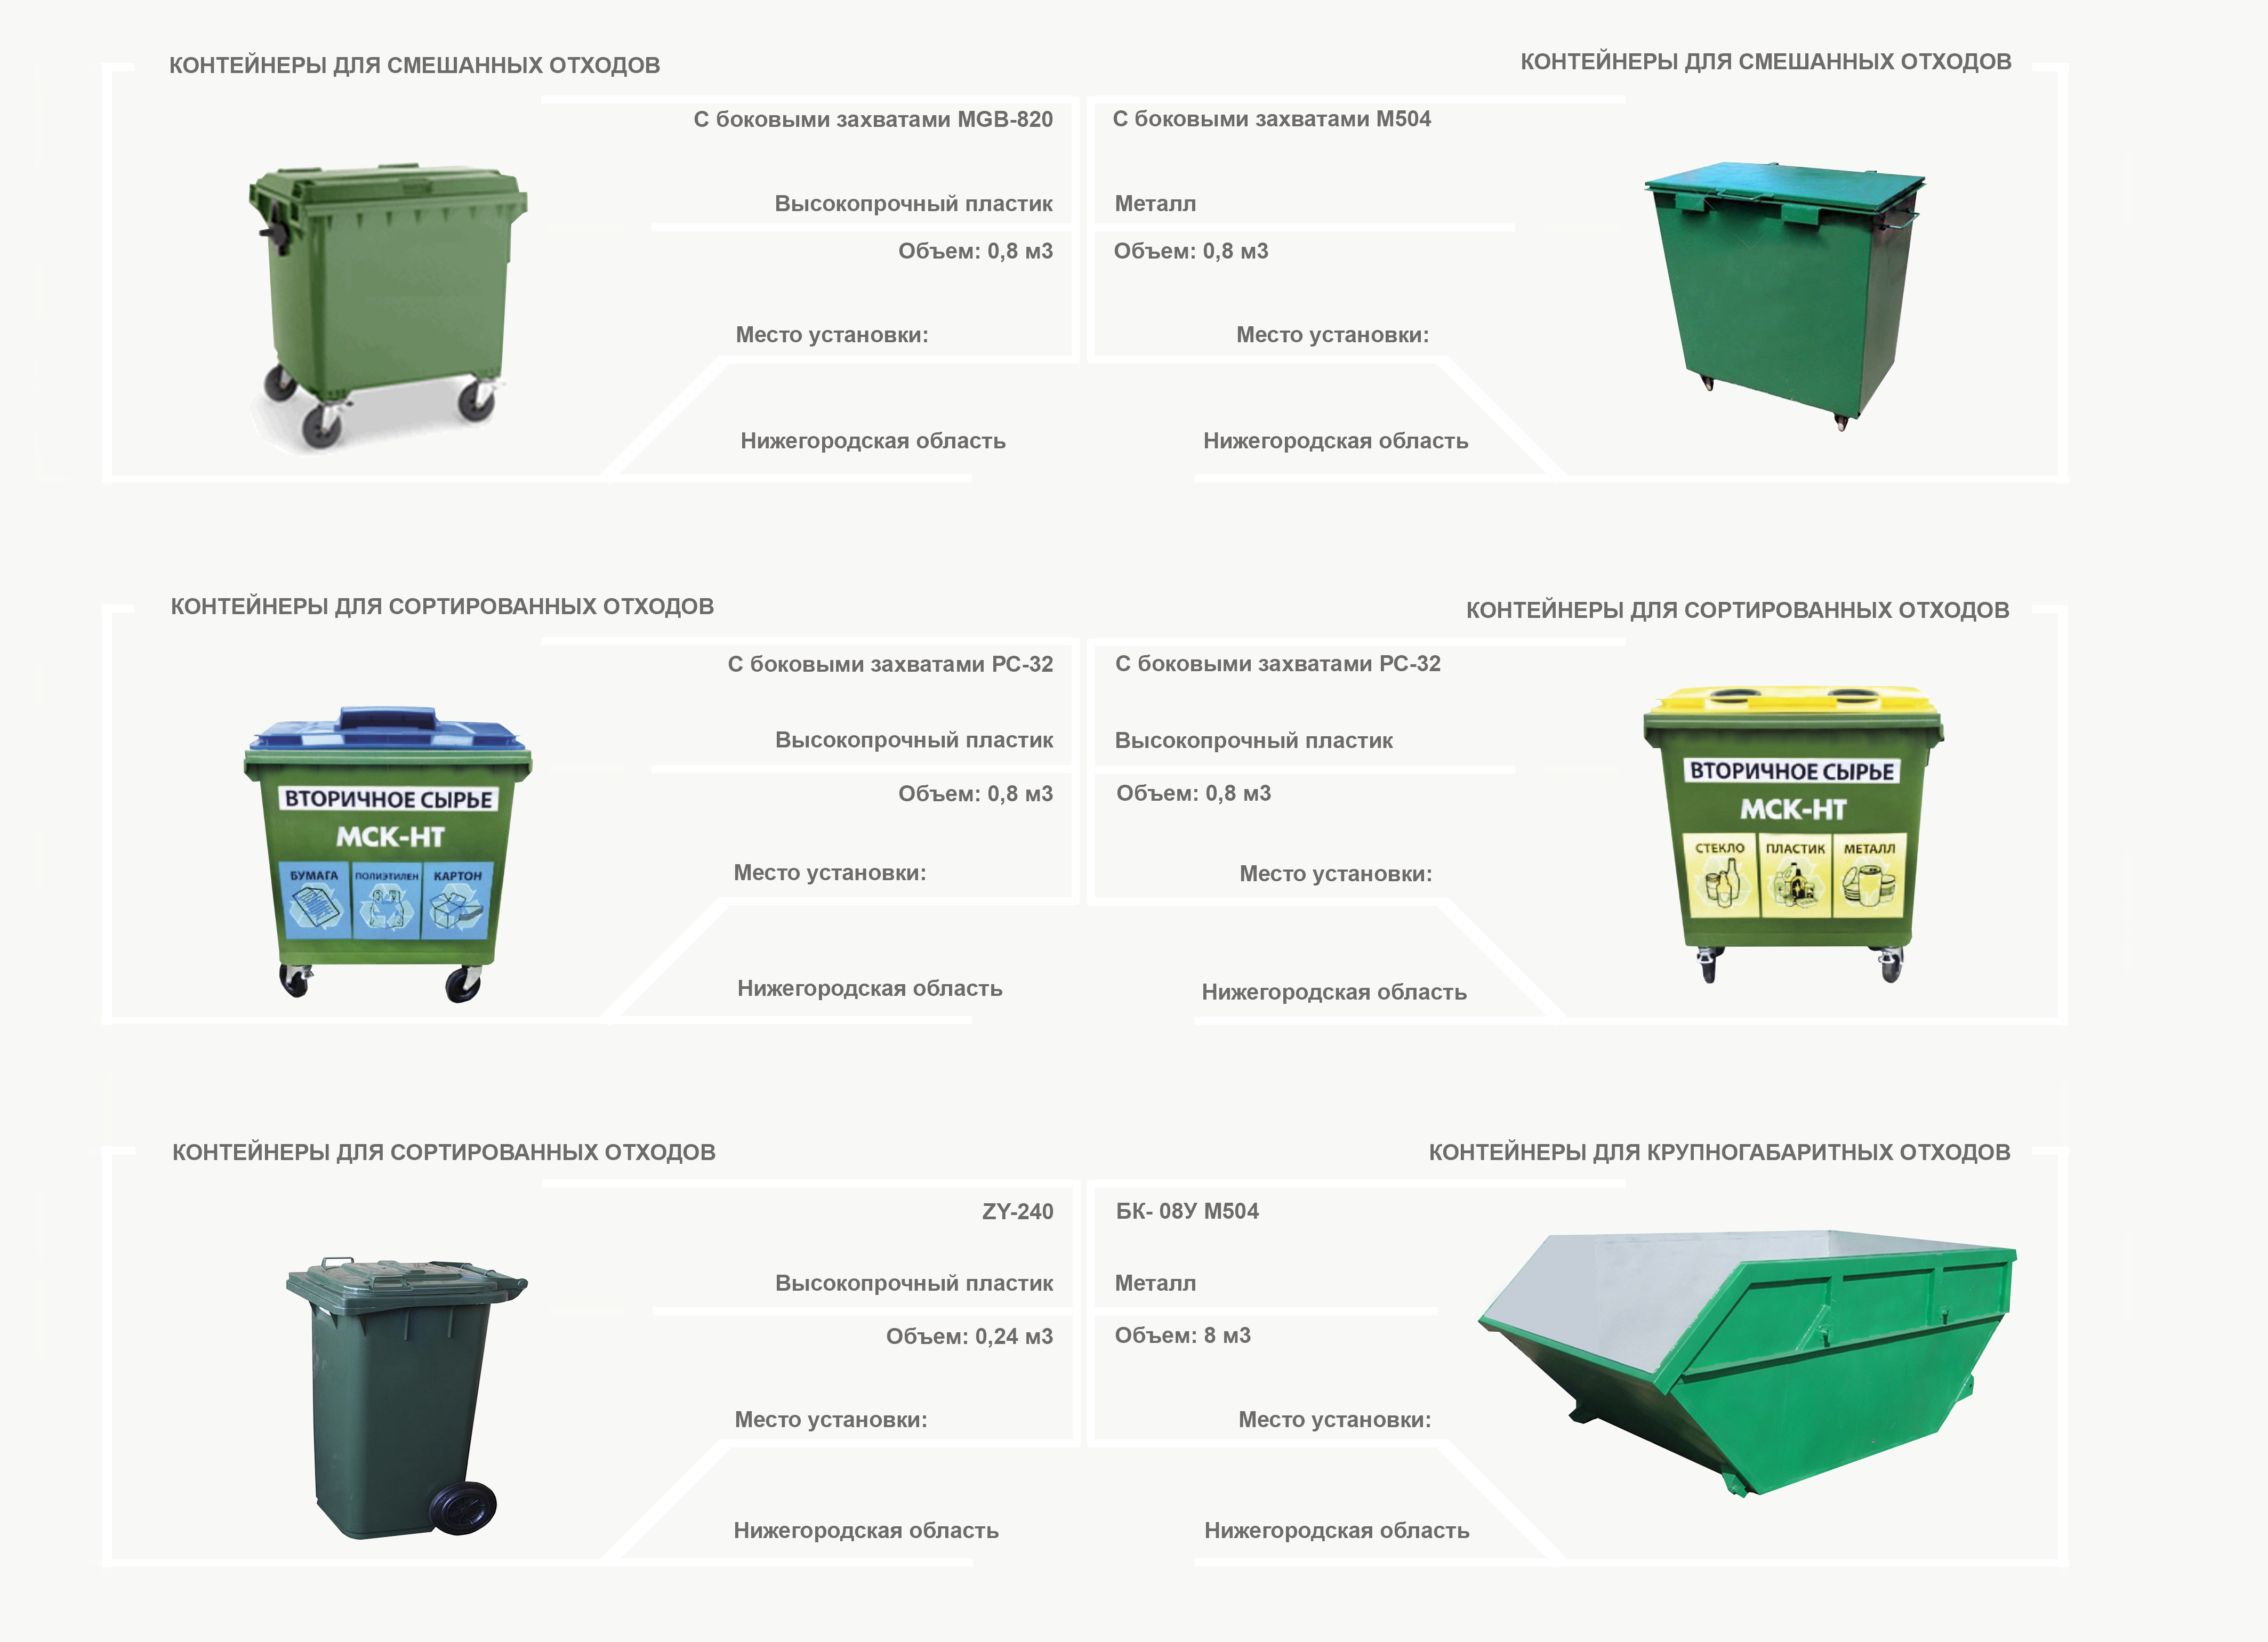 Правила обустройства контейнерных площадок для сбора тко - виды отходов  твердые  коммунальные отходы - статьи | отходы.ру